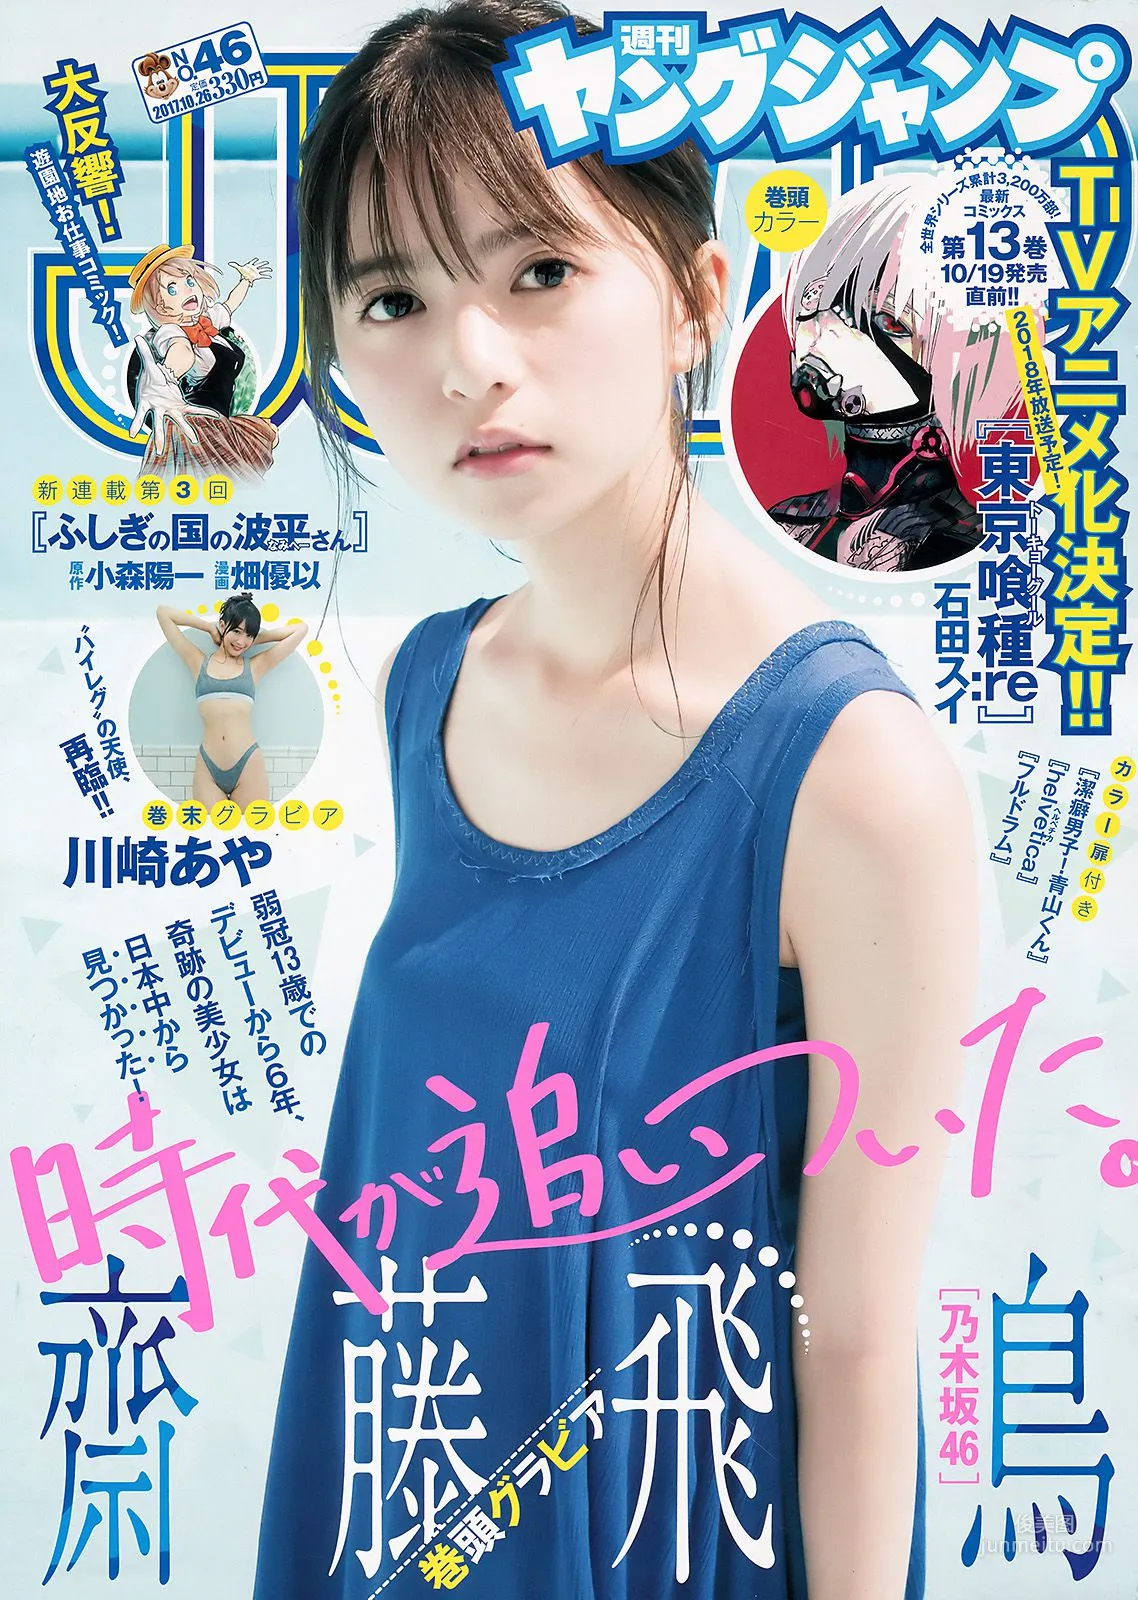 齋藤飛鳥 川崎あや [Weekly Young Jump] 2017年No.46 写真杂志1